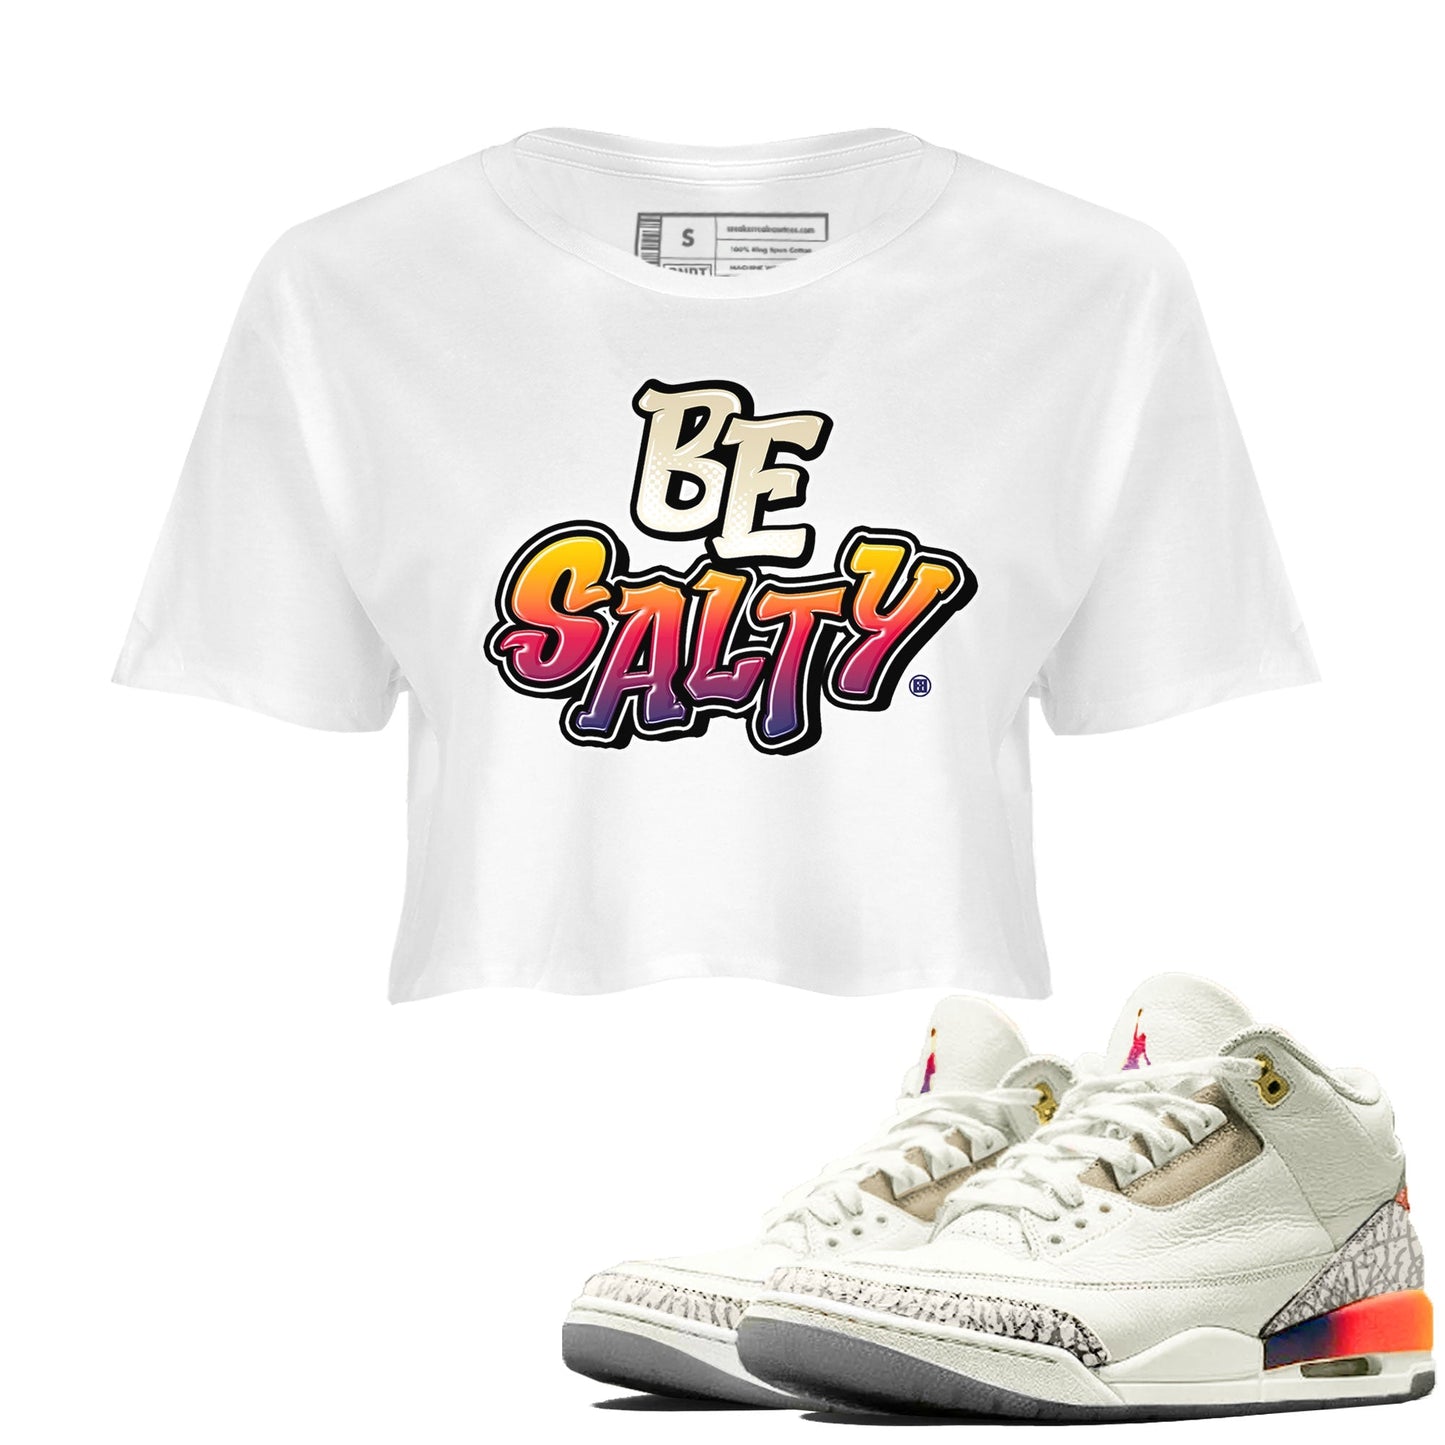 Air Jordan 3 X J Balvin shirt to match jordans Be Salty Streetwear Sneaker Shirt Air Jordan 3 X J Balvin Drip Gear Zone Sneaker Matching Clothing White 1 Crop T-Shirt